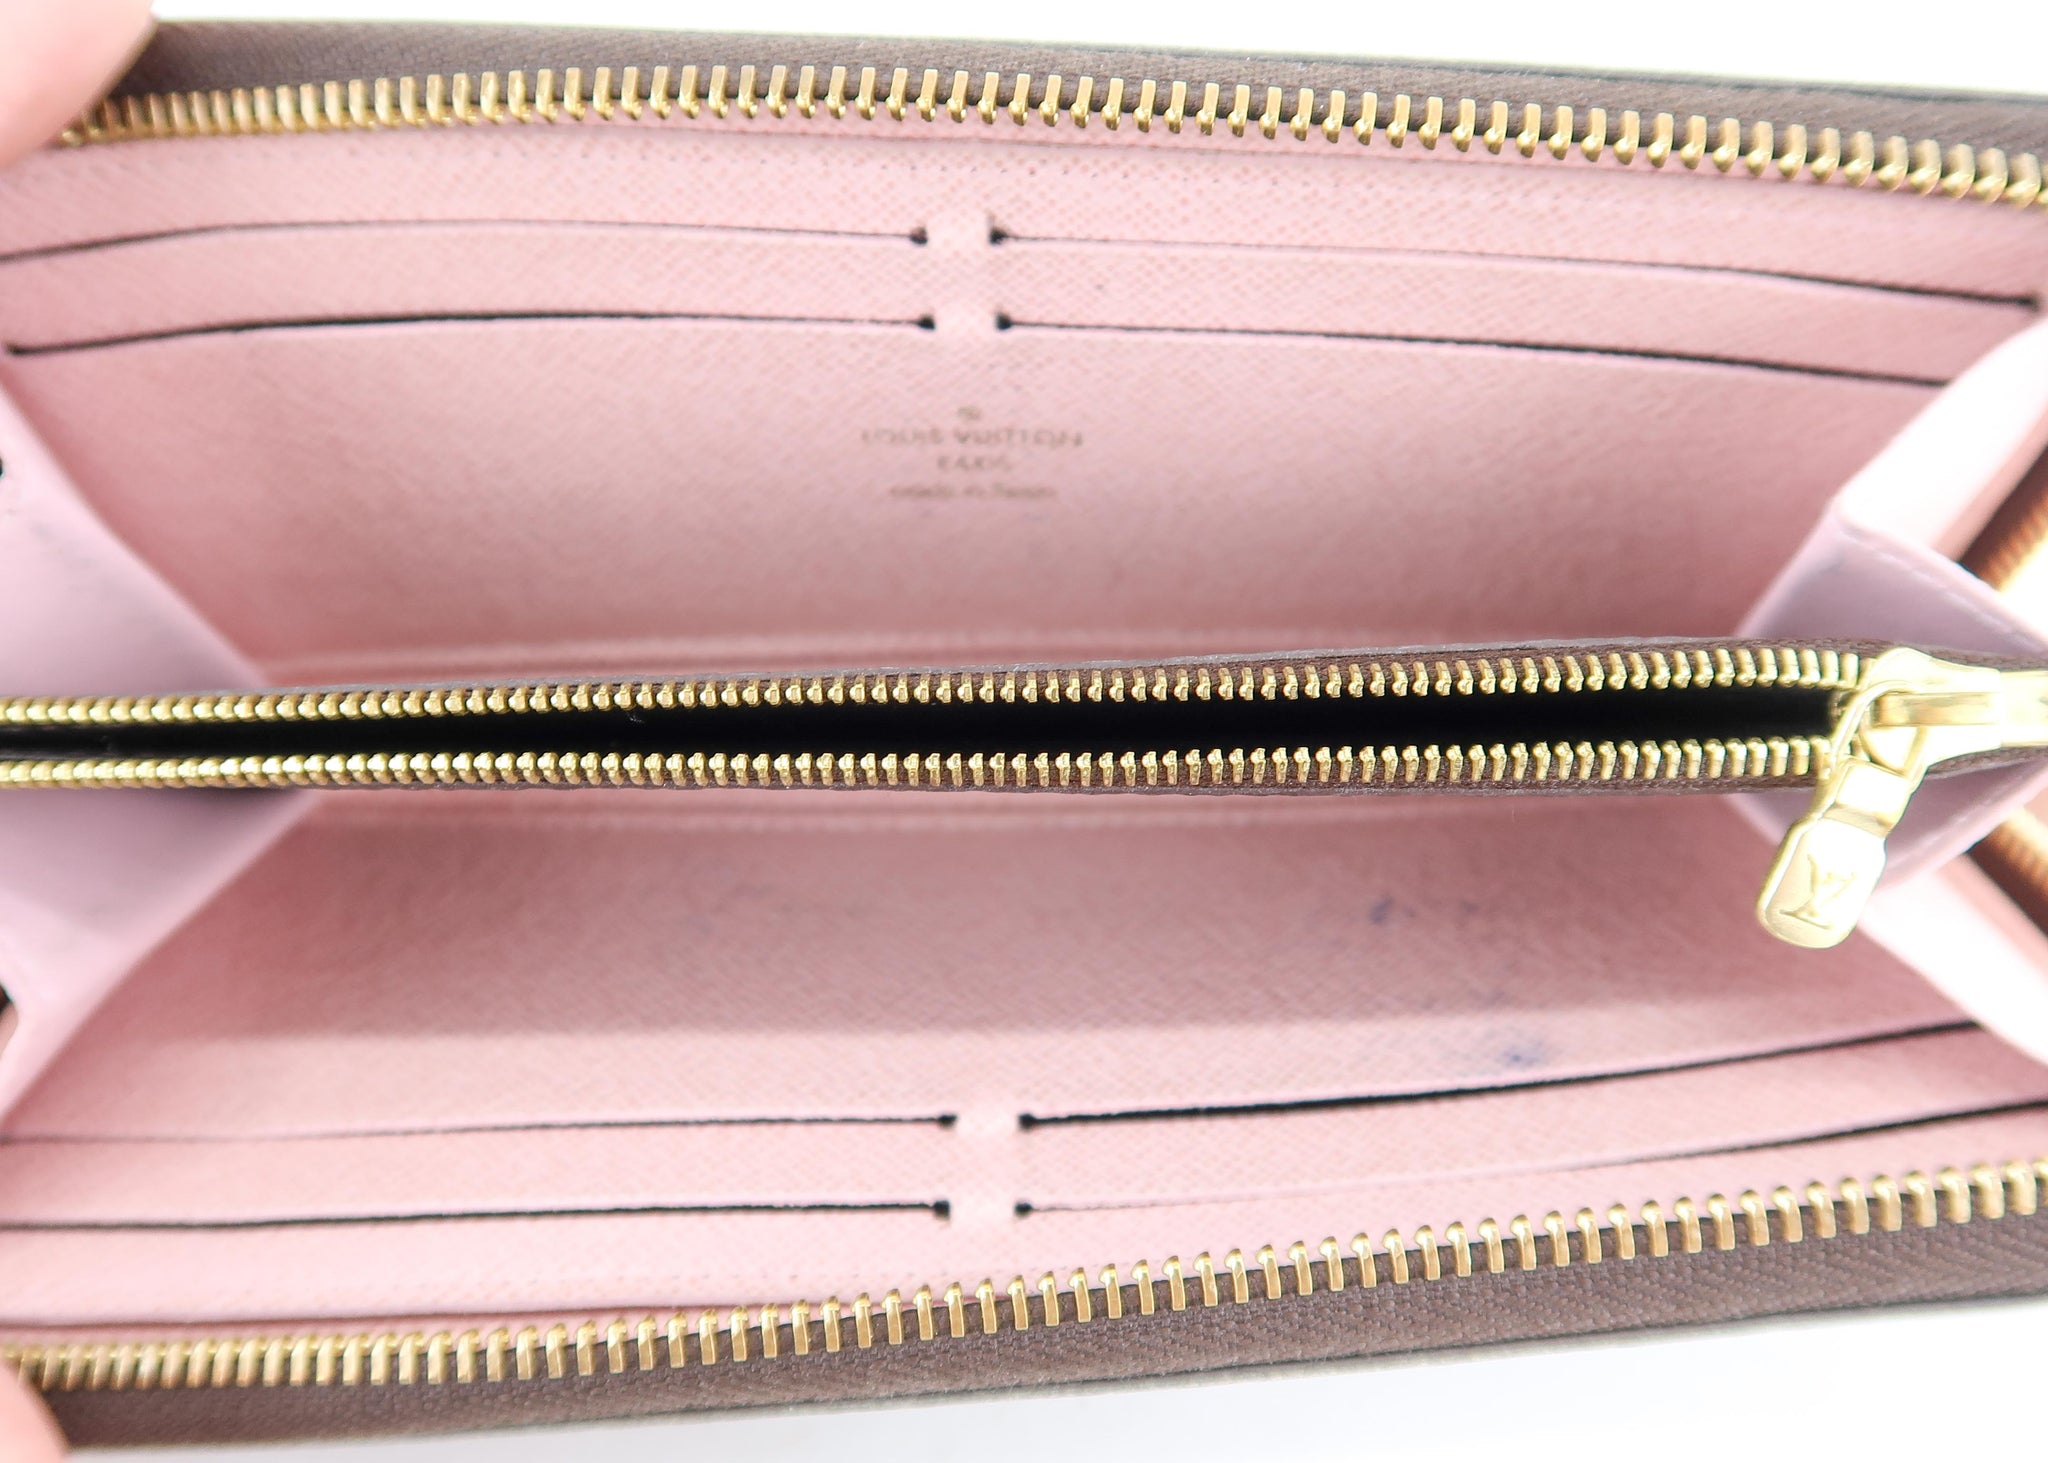 lv wallet pink inside